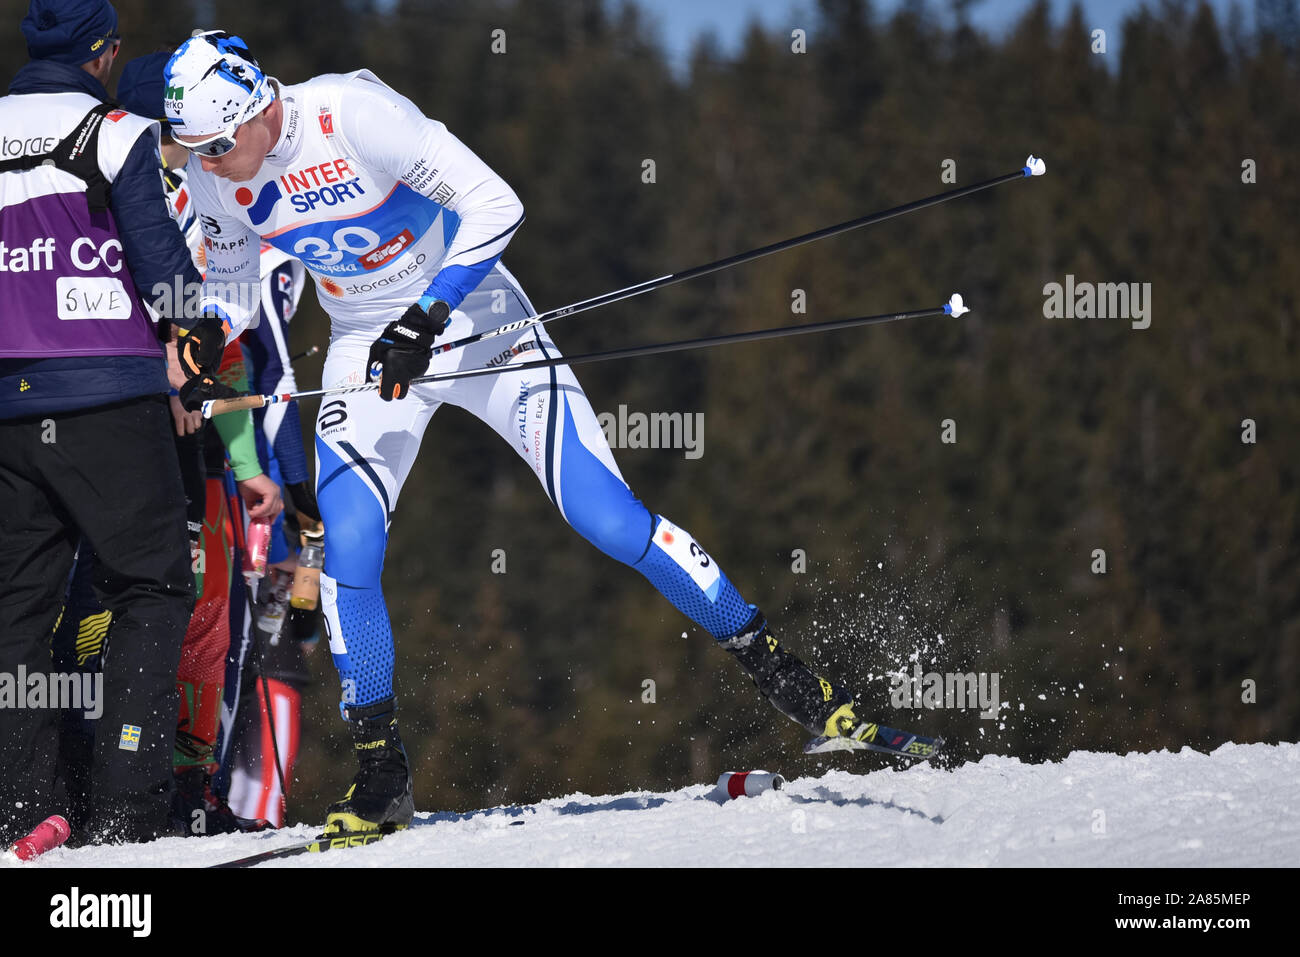 Karel Tammjarv de Estonia en el skiathlon en el 2019 Campeonato Mundial de Esquí Nórdico FIS en Seefeld, Austria. Posteriormente fue acusado de dopaje. Foto de stock